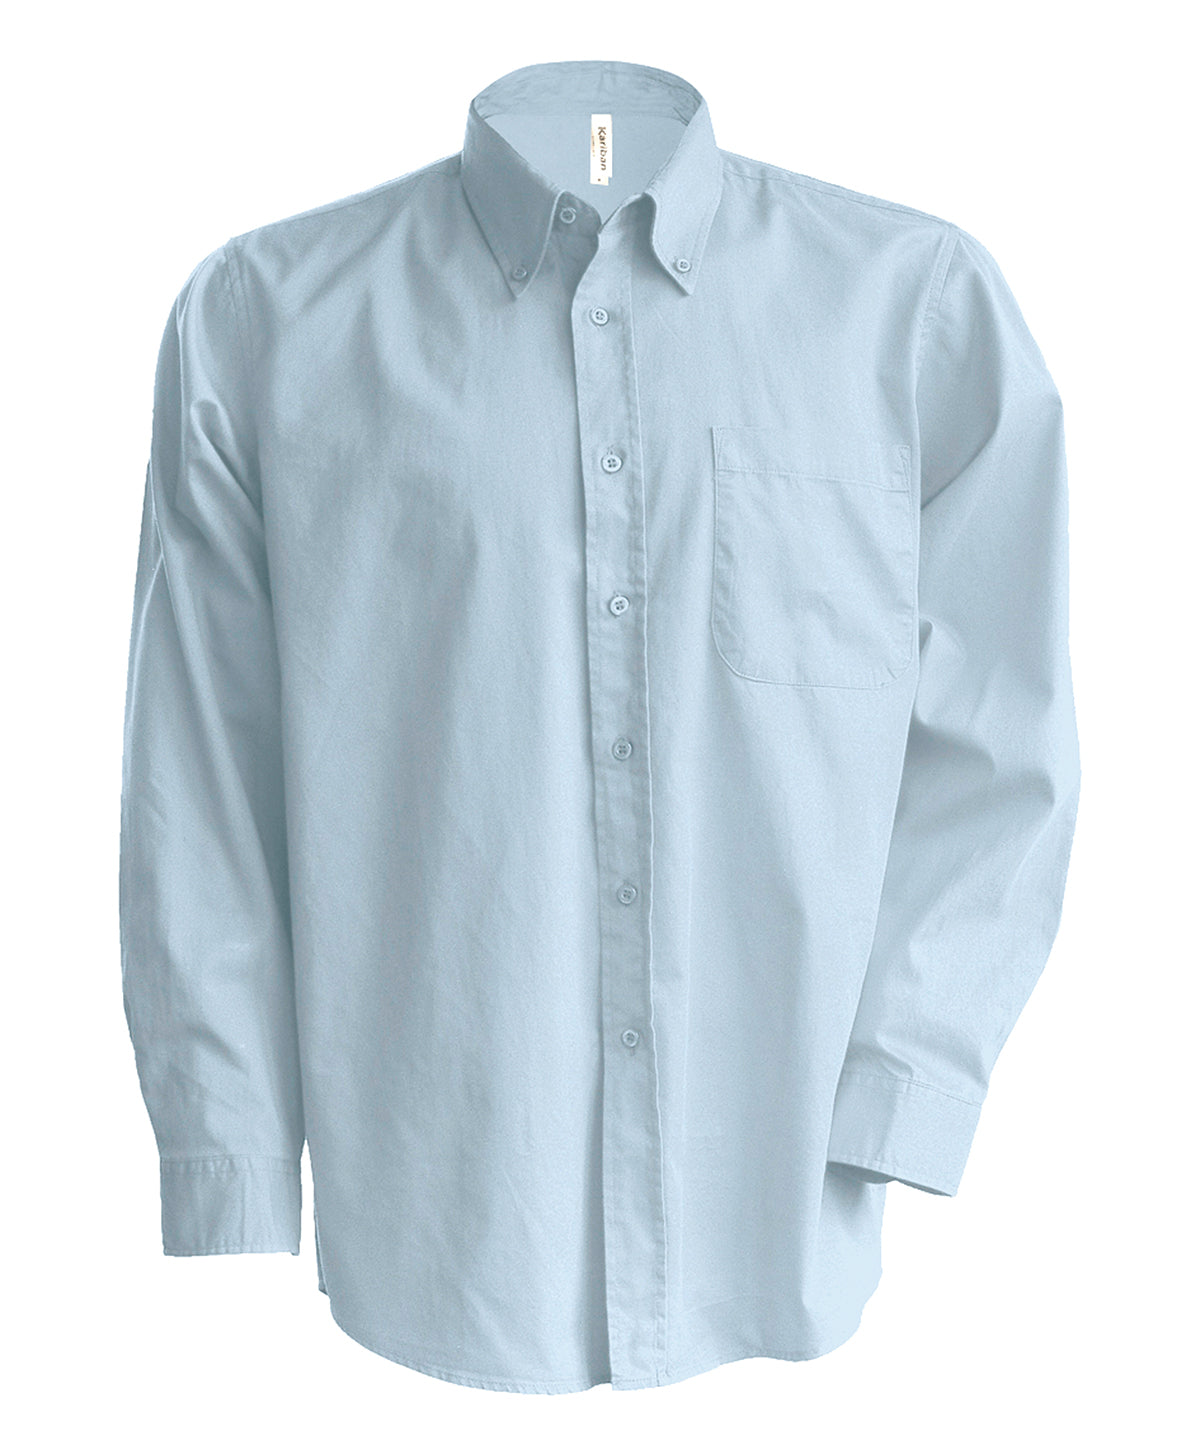 Bolir - Men's Long-sleeved Oxford Shirt